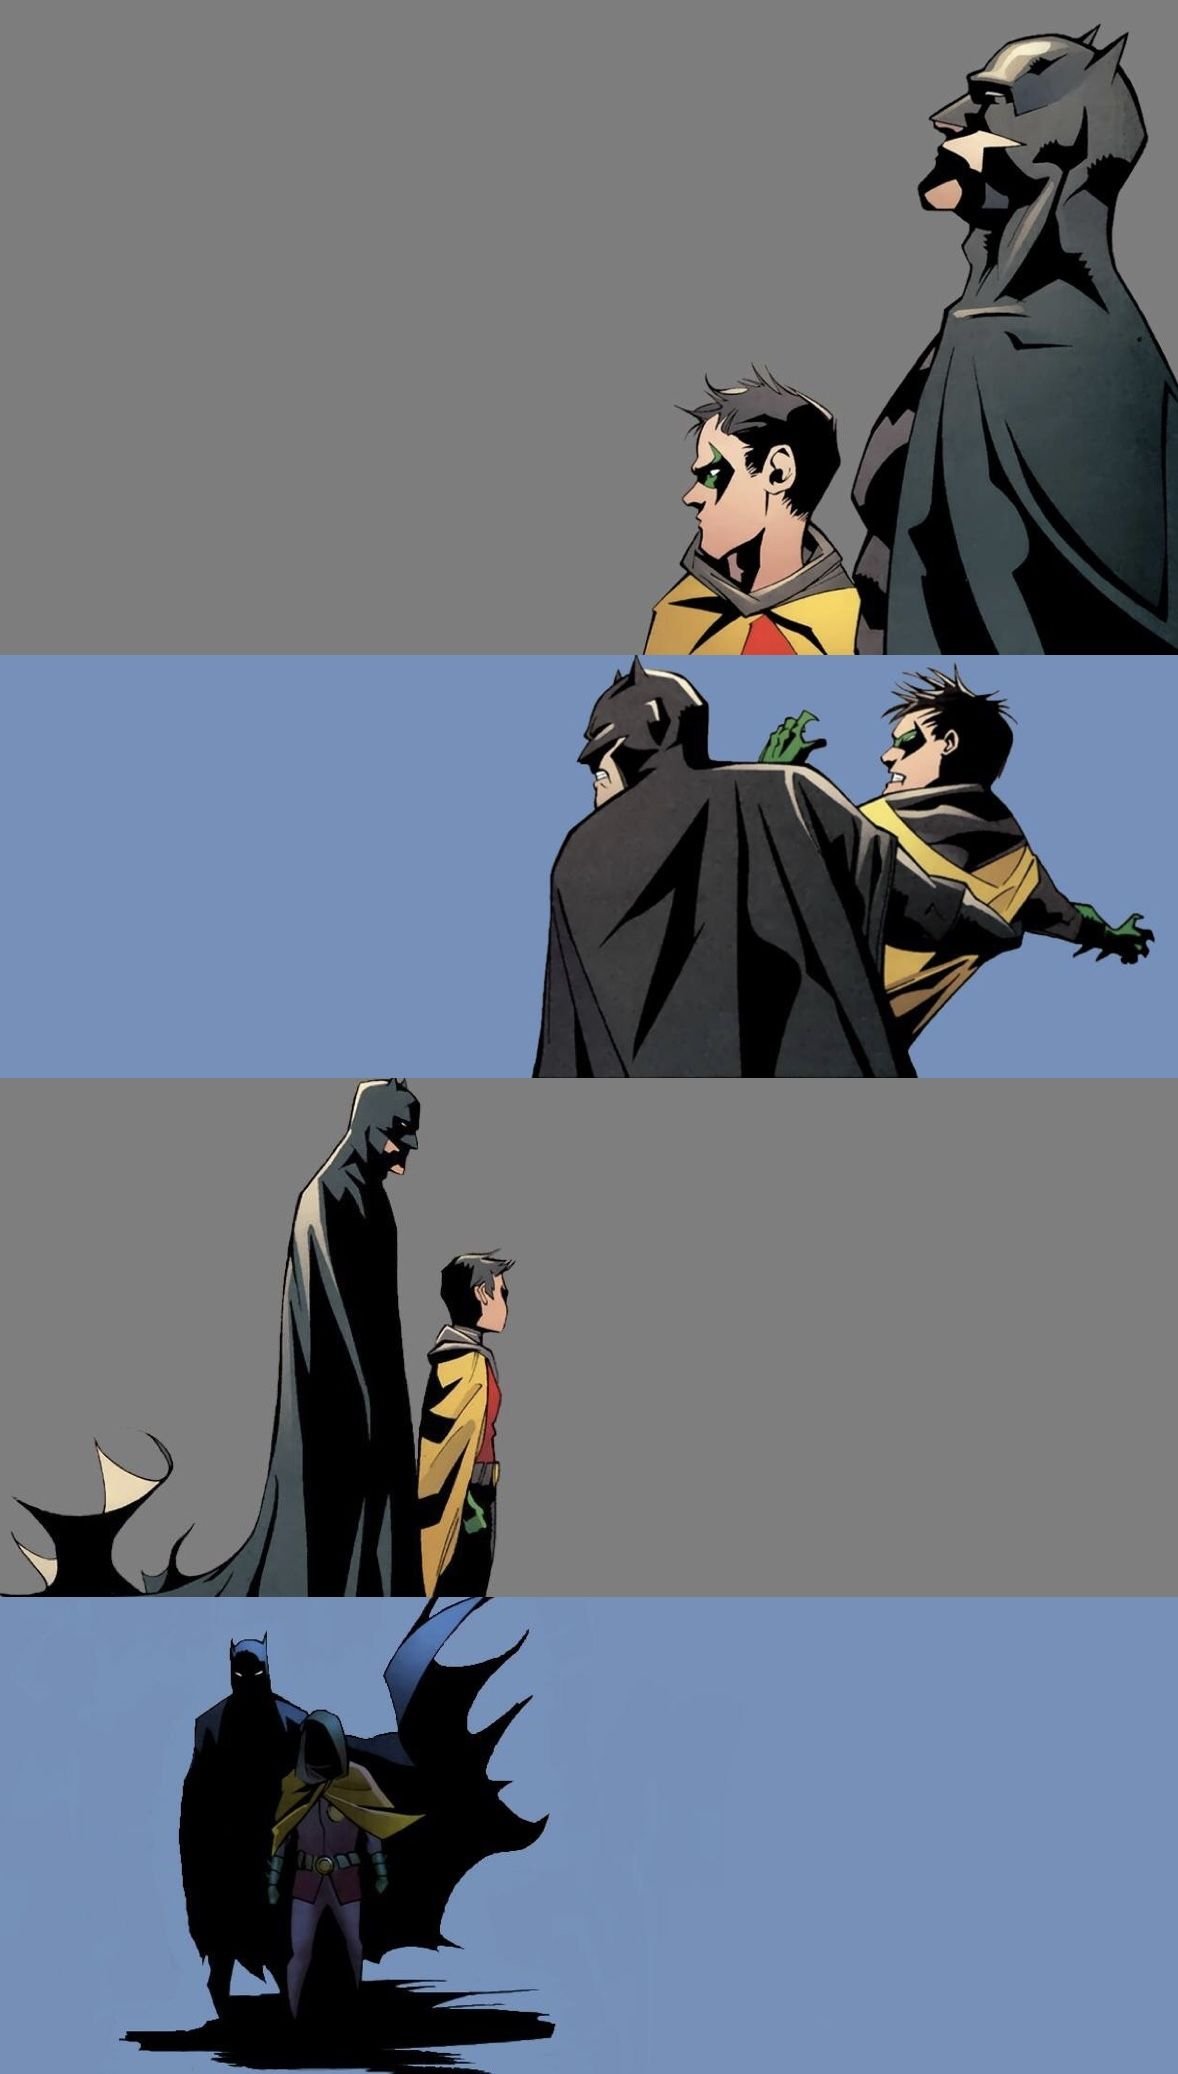 Wallpaper Iphone 4 Batman Vs Superman